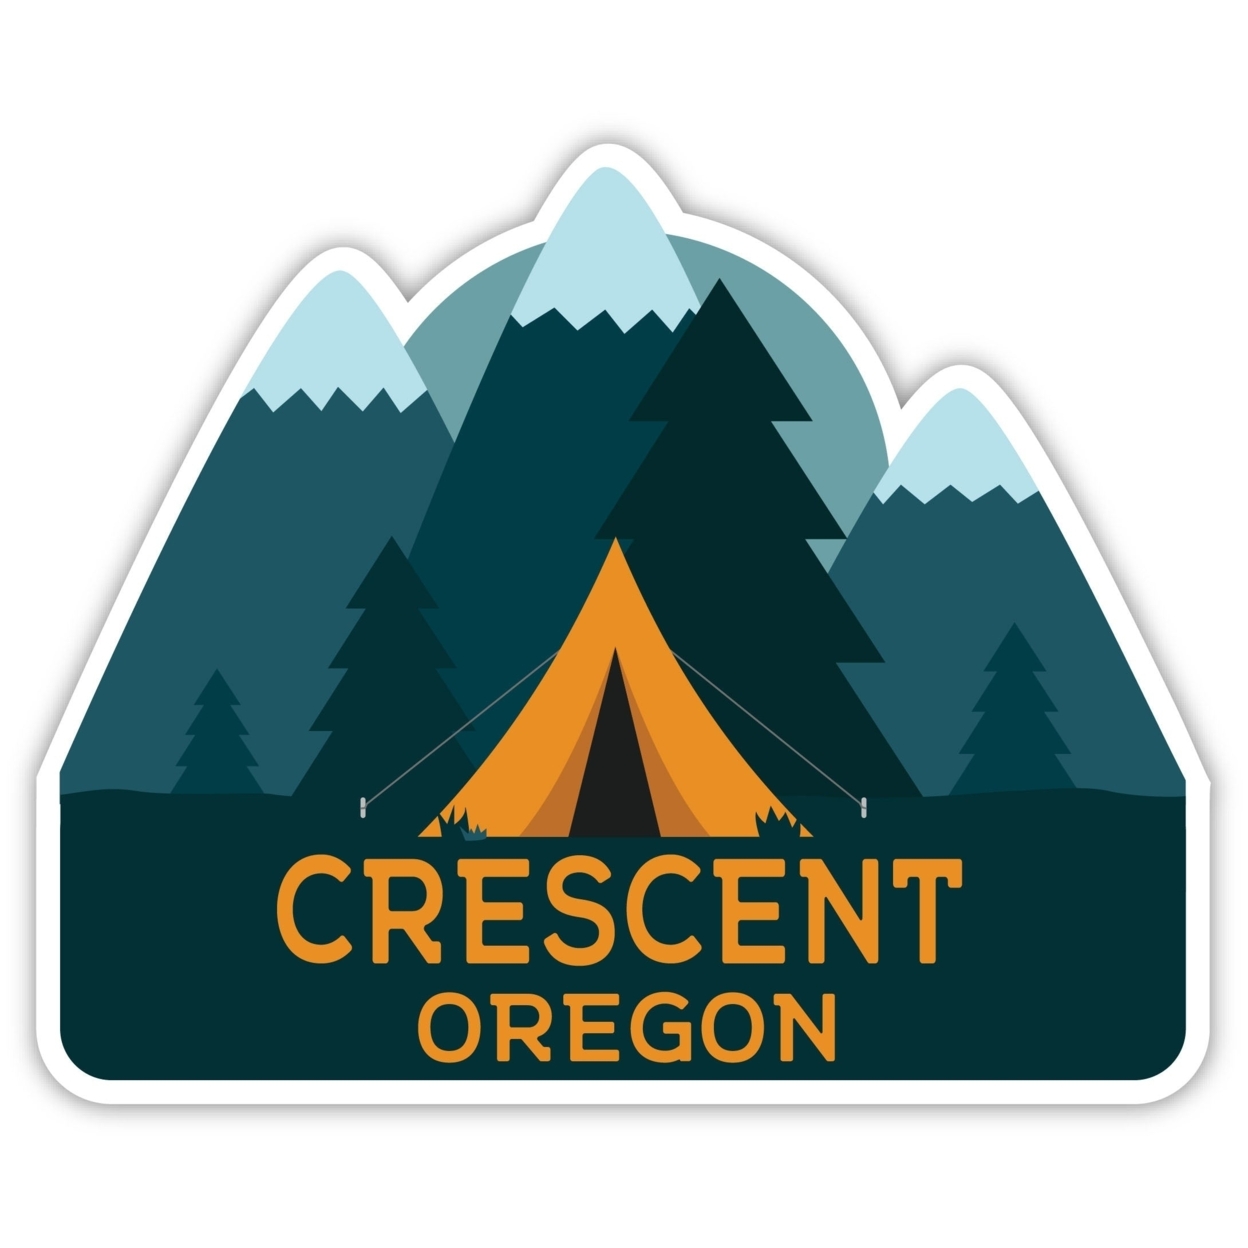 Crescent Oregon Souvenir Decorative Stickers (Choose Theme And Size) - Single Unit, 8-Inch, Tent